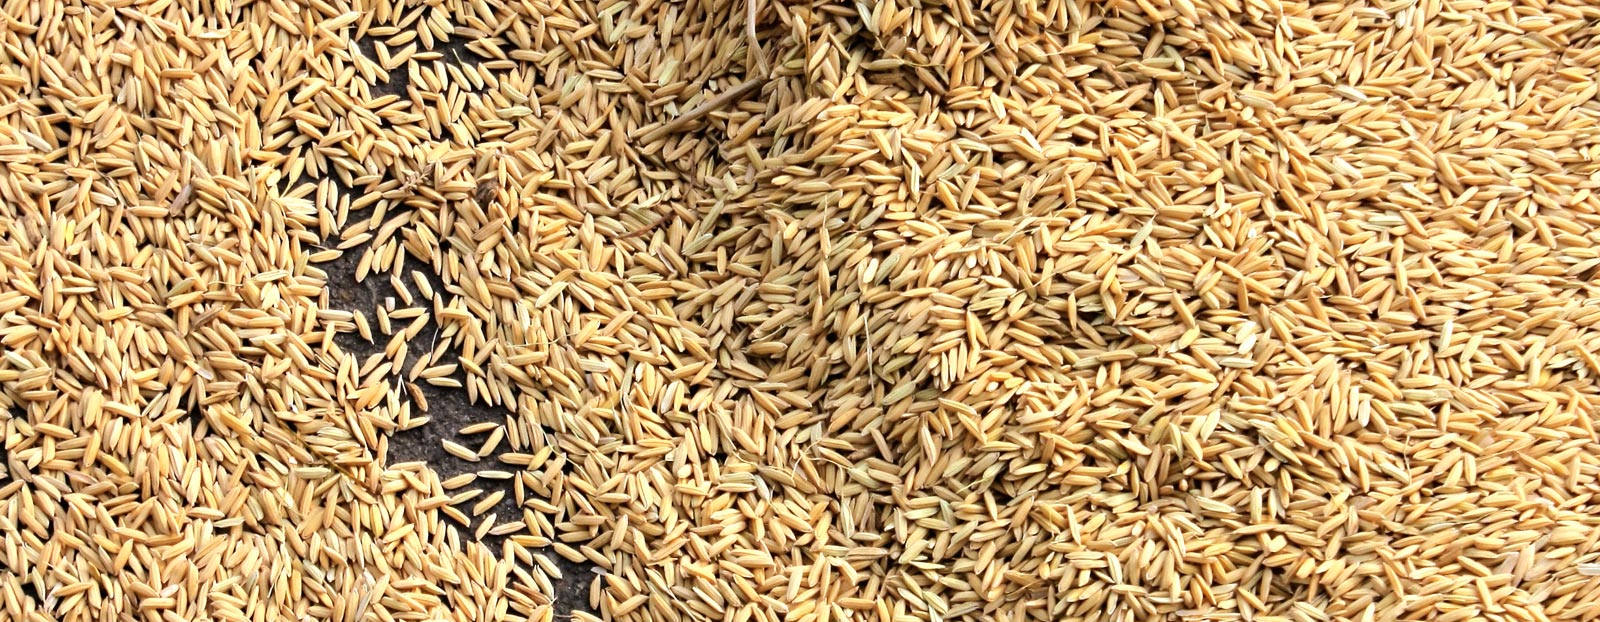 自然状态的稻米